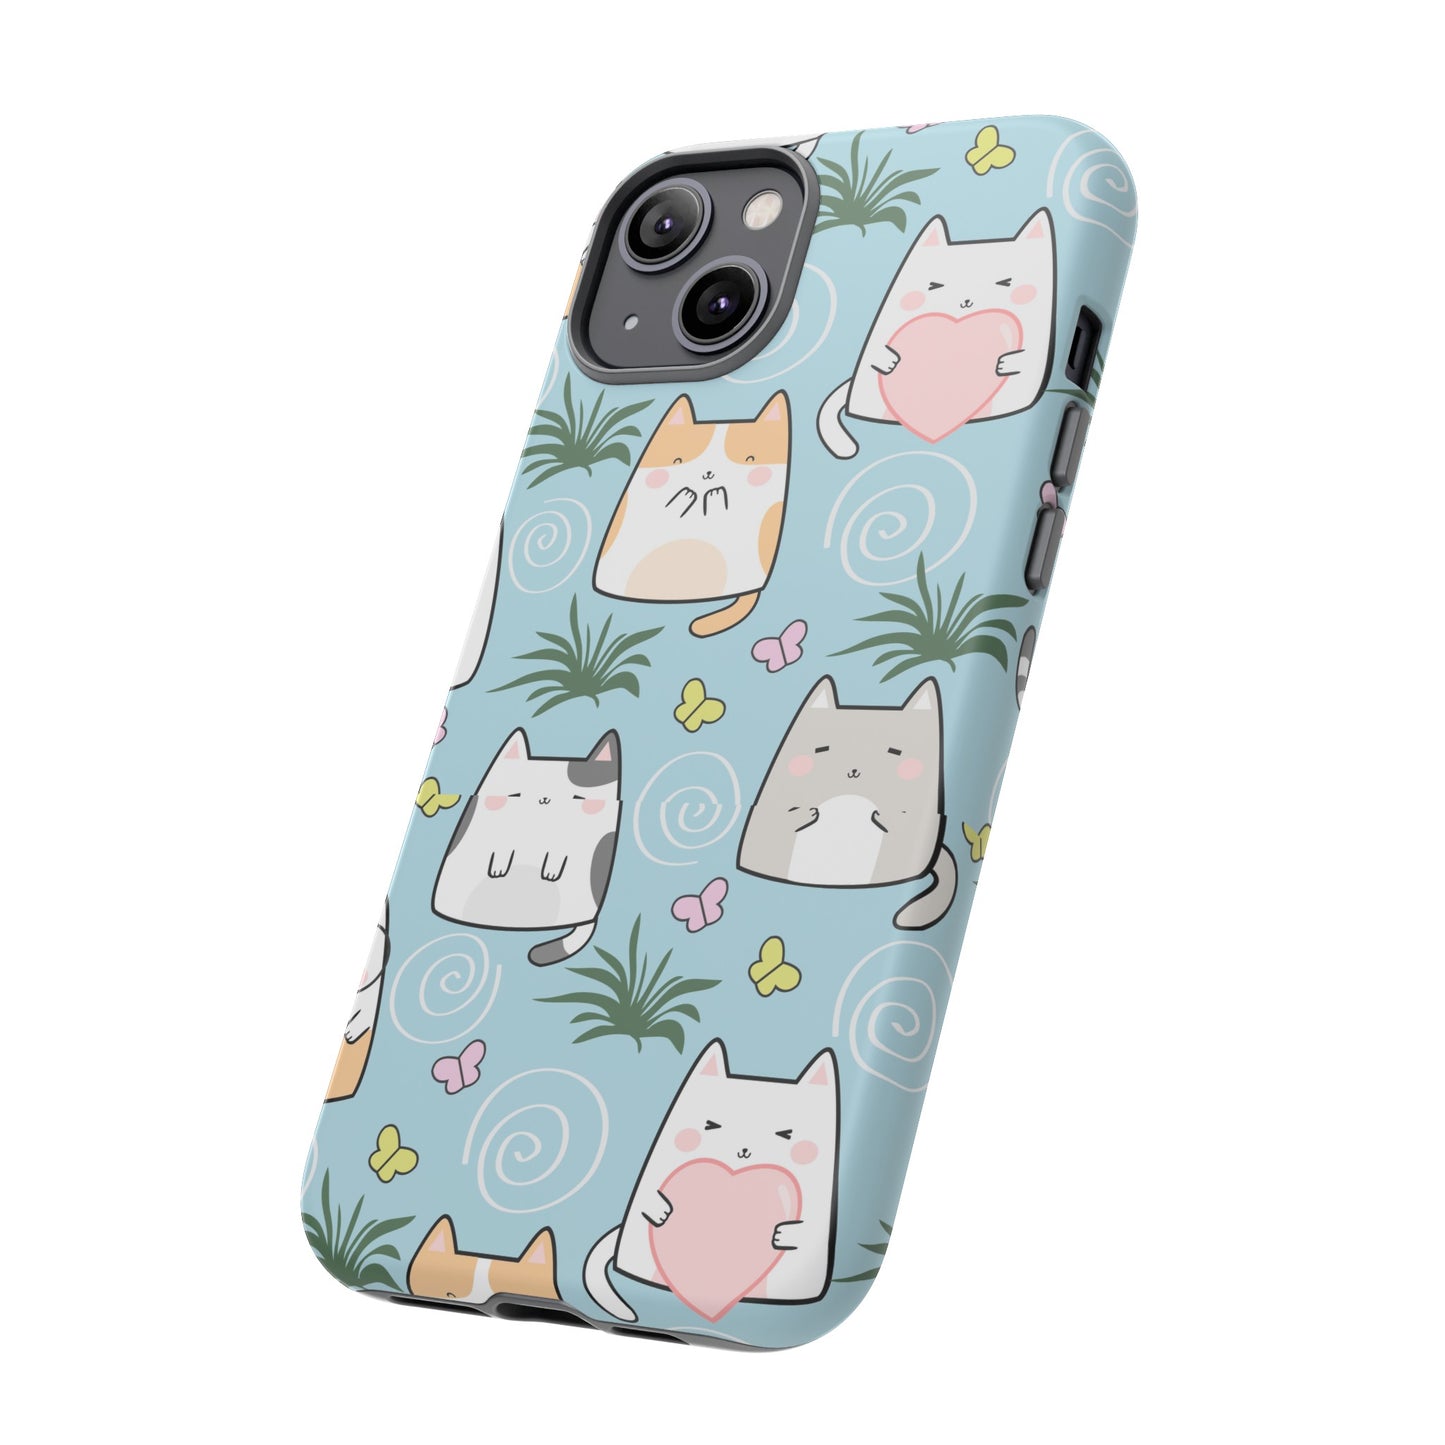 Cute Cats: IPhone Case